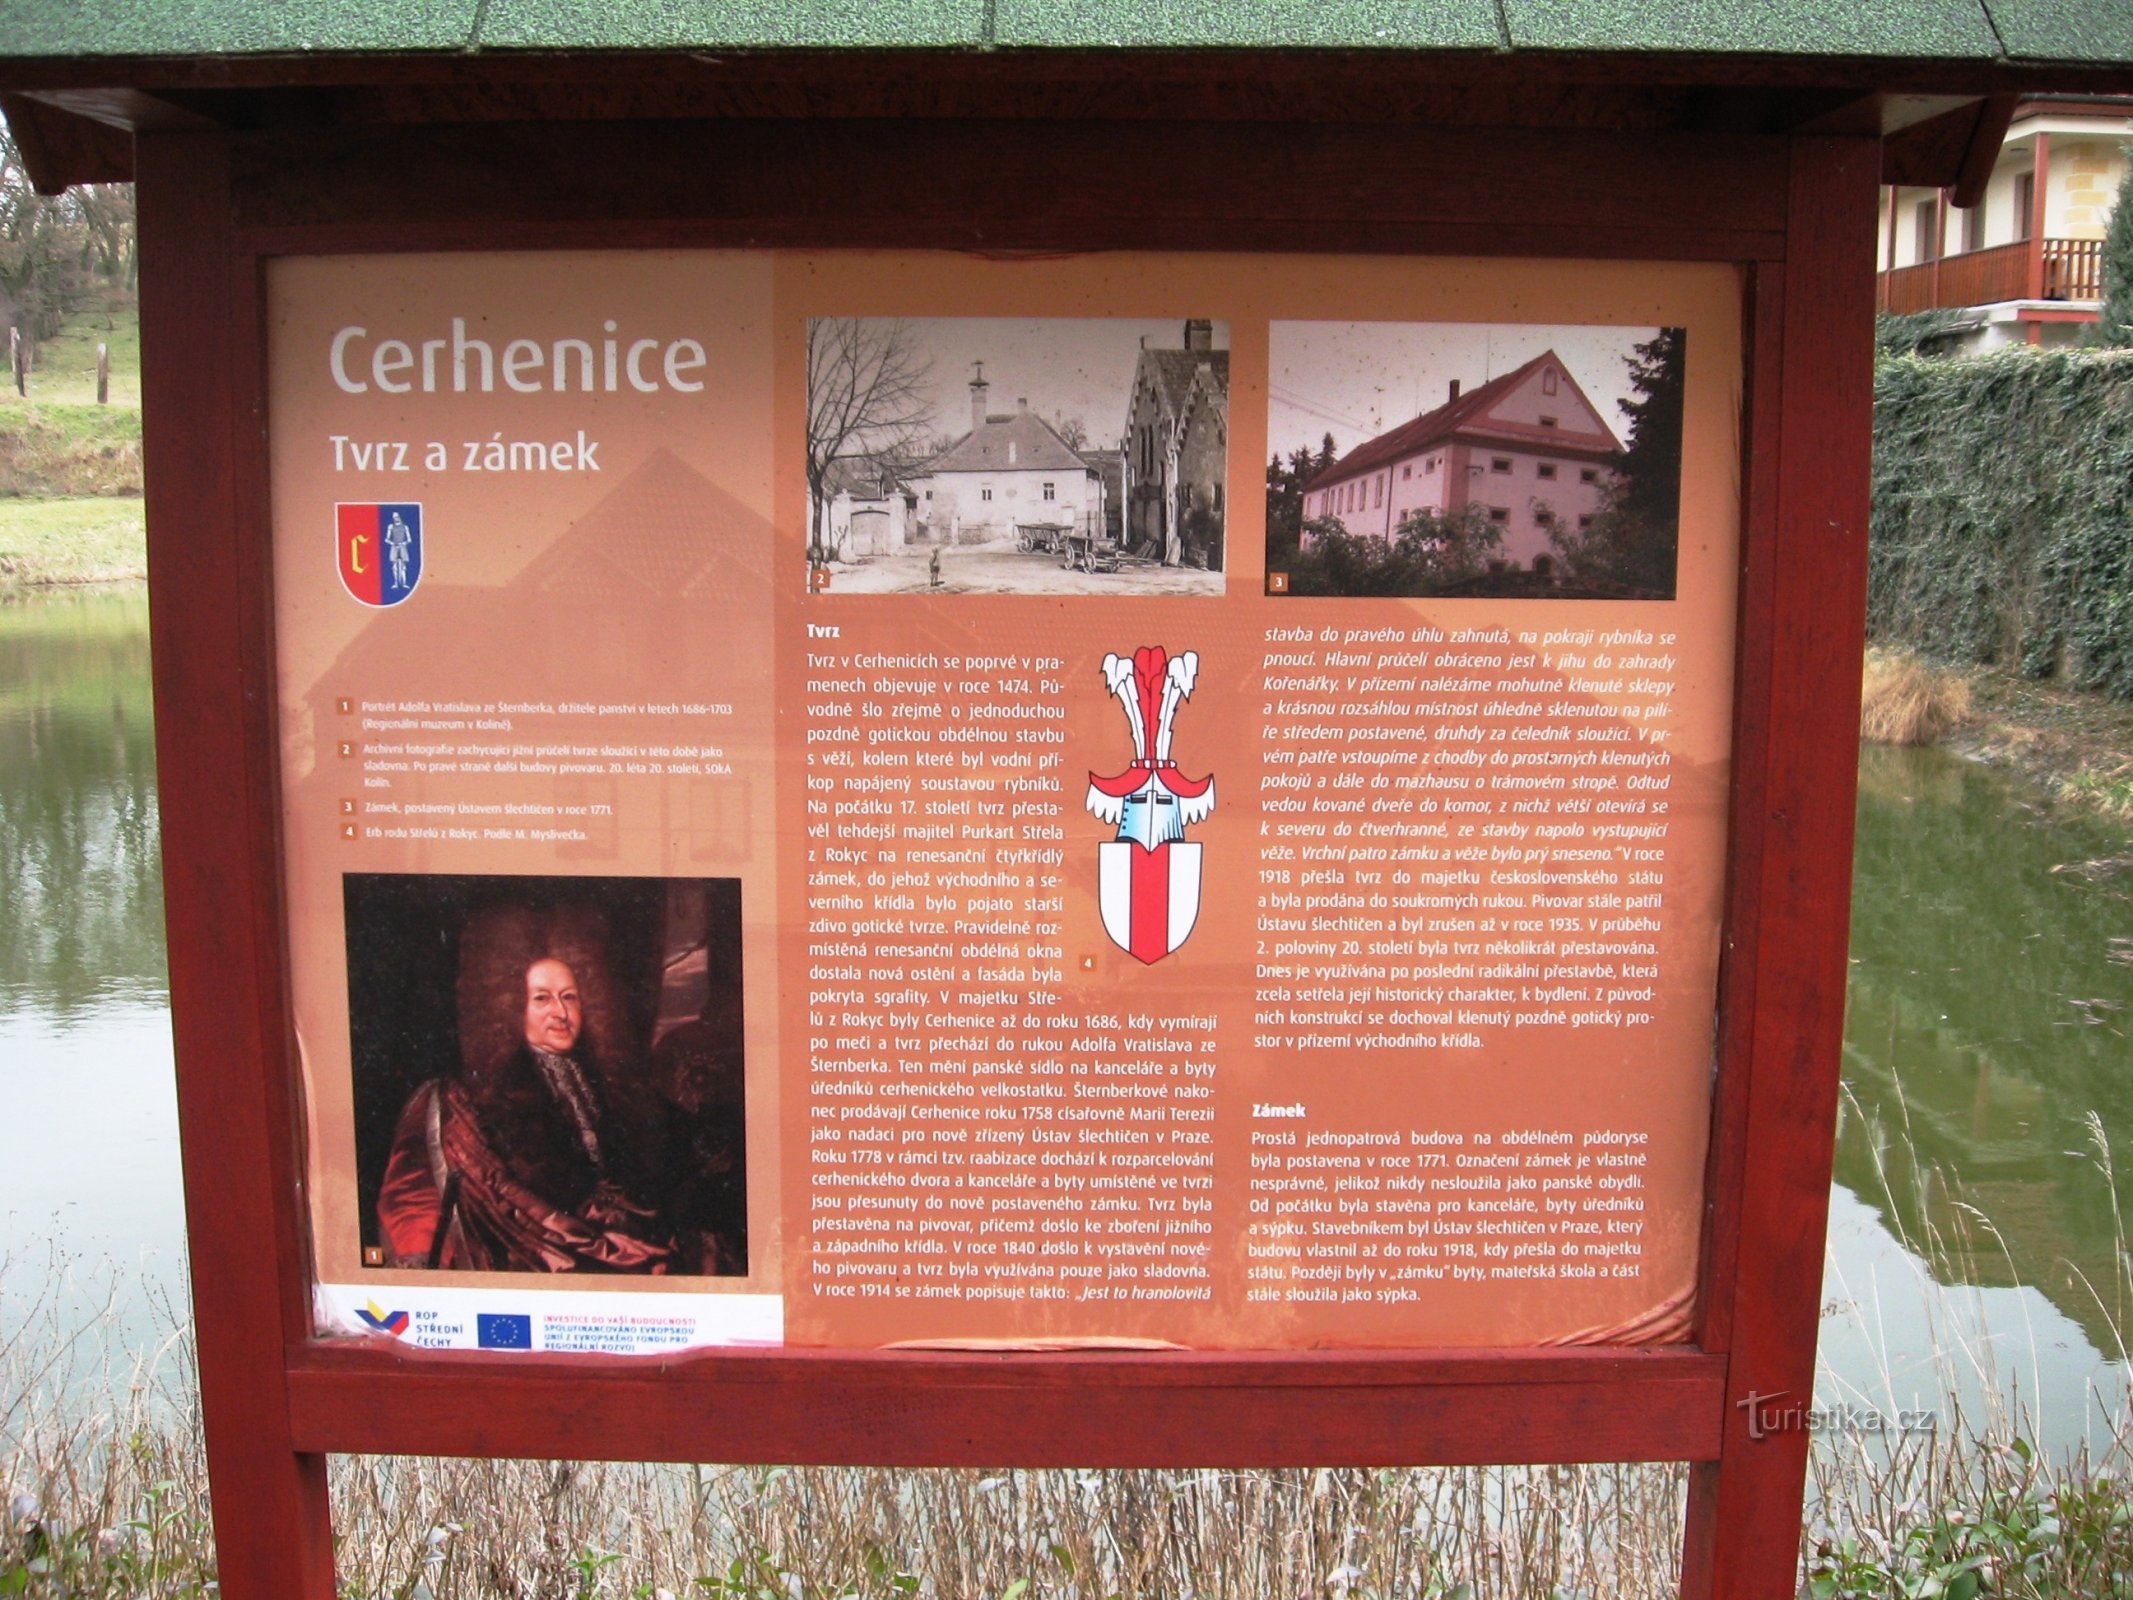 πίνακας πληροφοριών στο κάστρο και το φρούριο στο Cerhenice